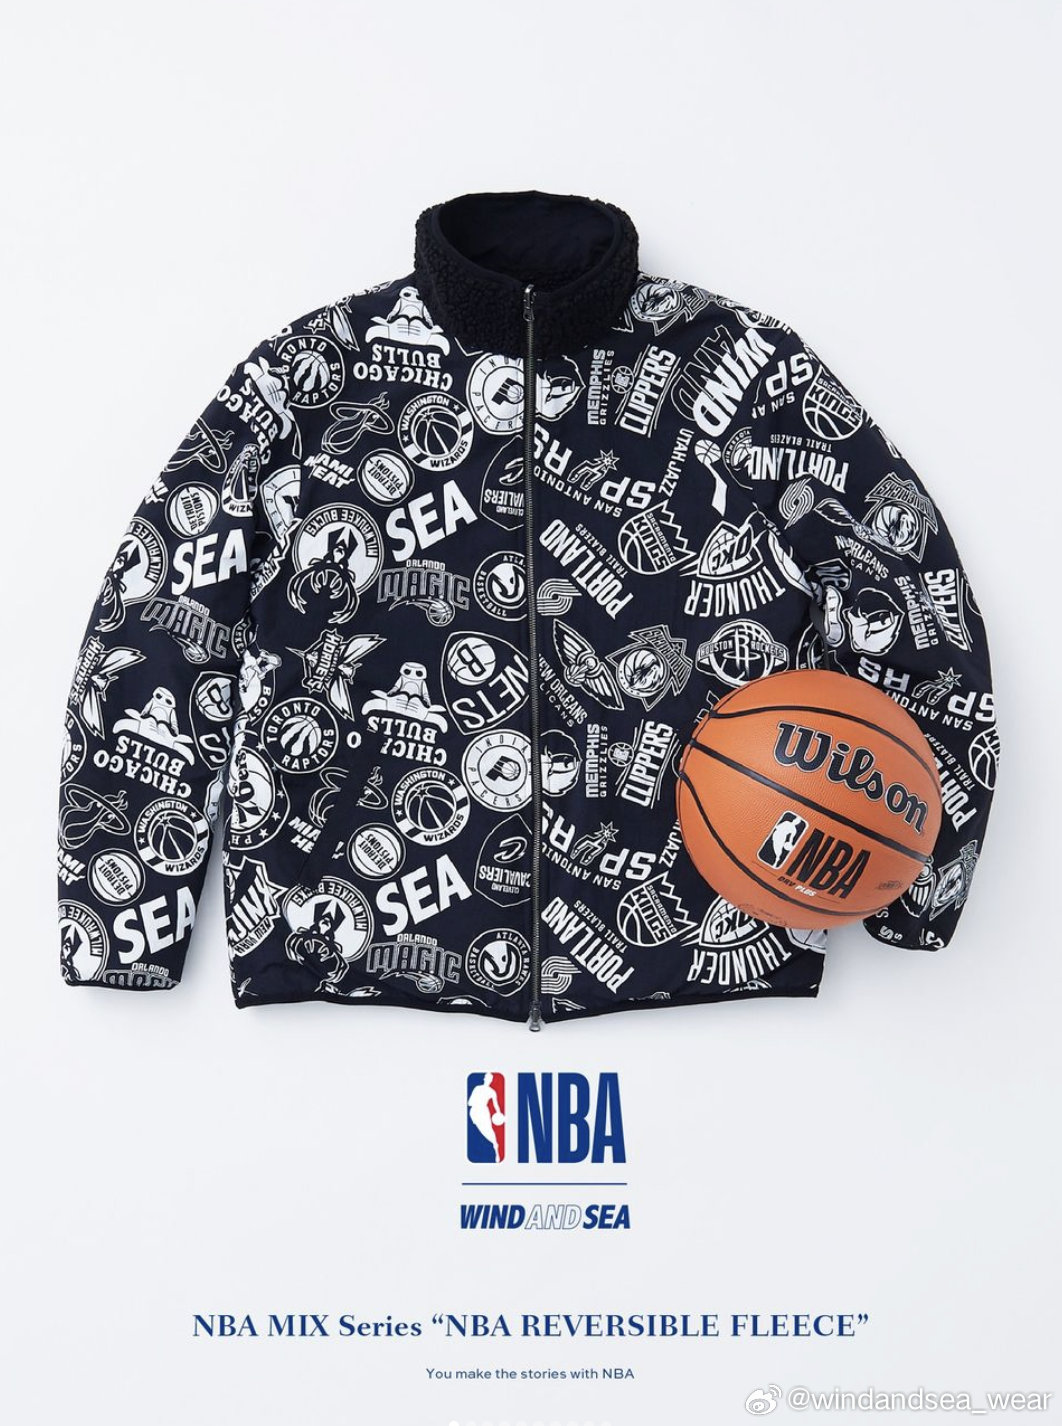 日本街头品牌WIND AND SEA与美国职业篮球联赛NBA合作，推出联名款服装